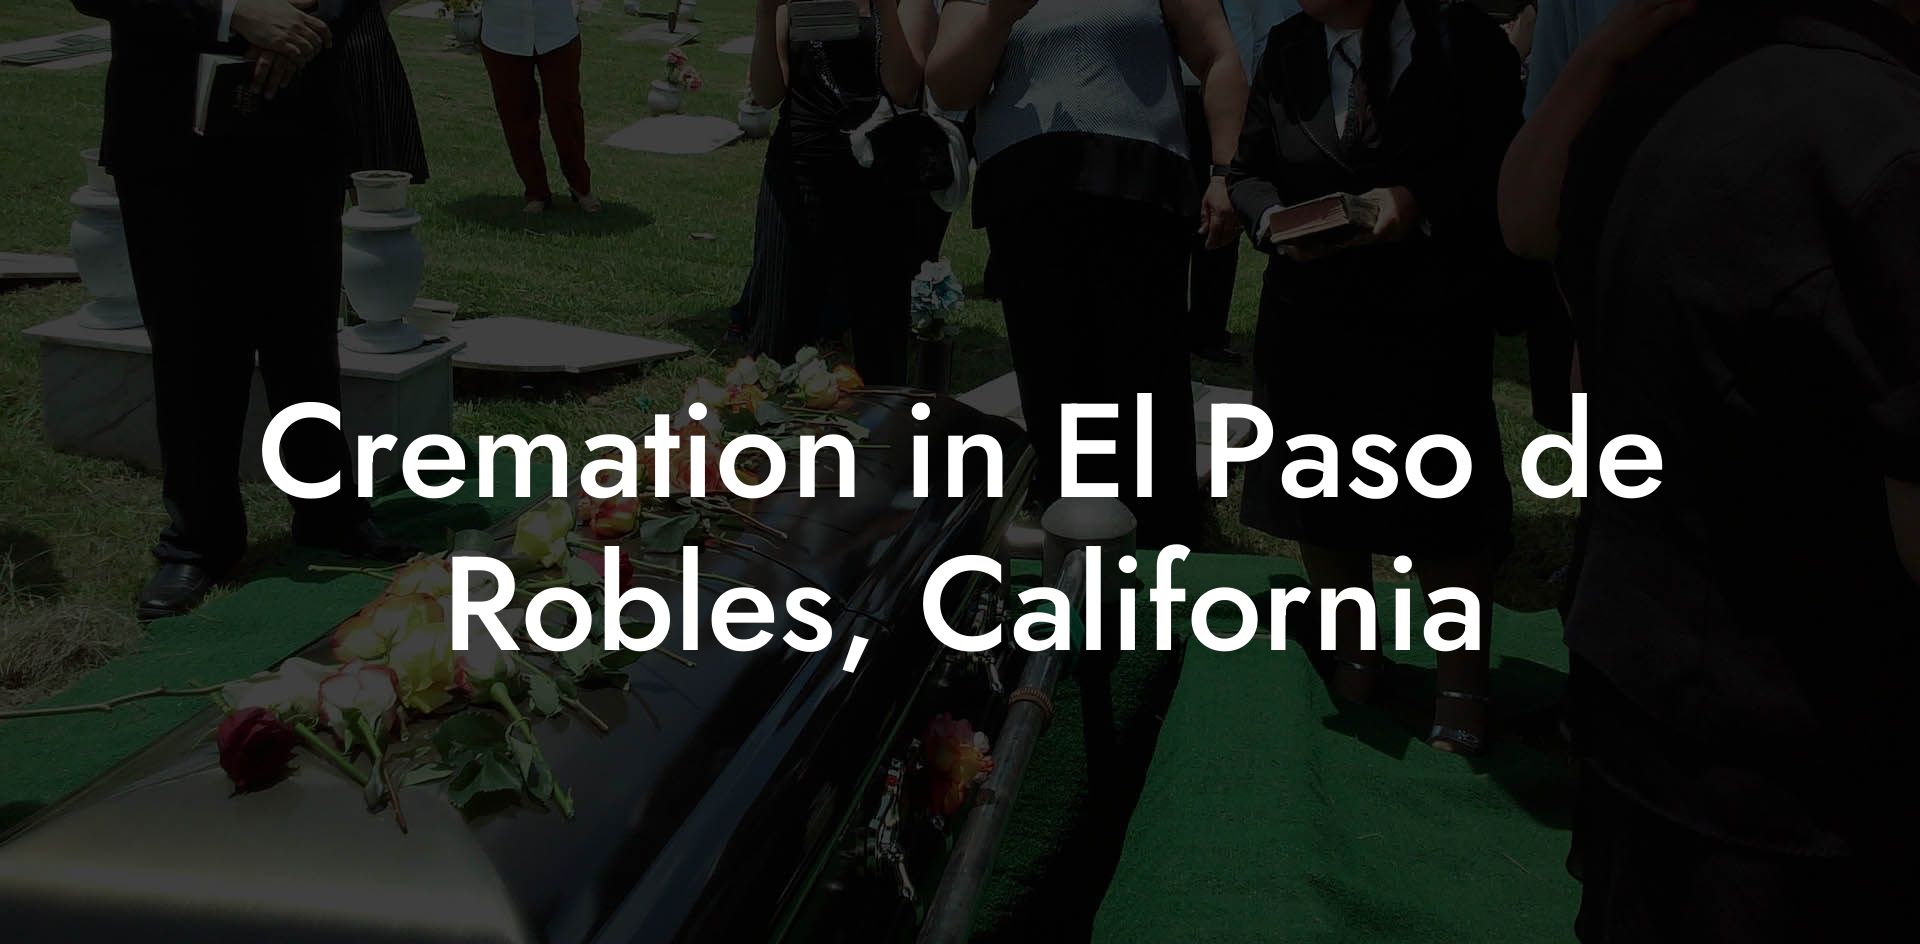 Cremation in El Paso de Robles, California